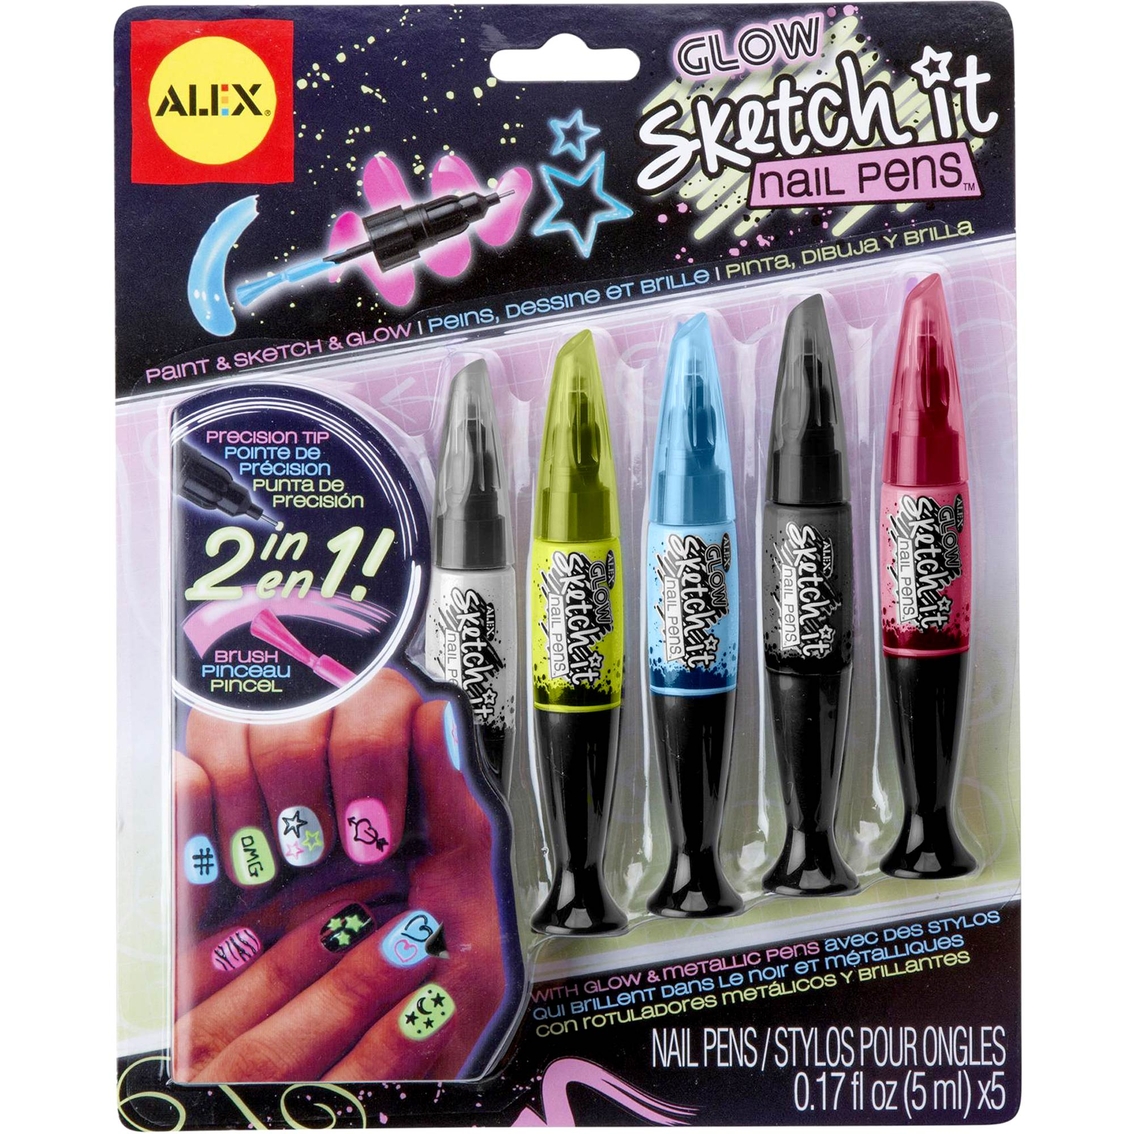 alex spa glow sketch it nail pens